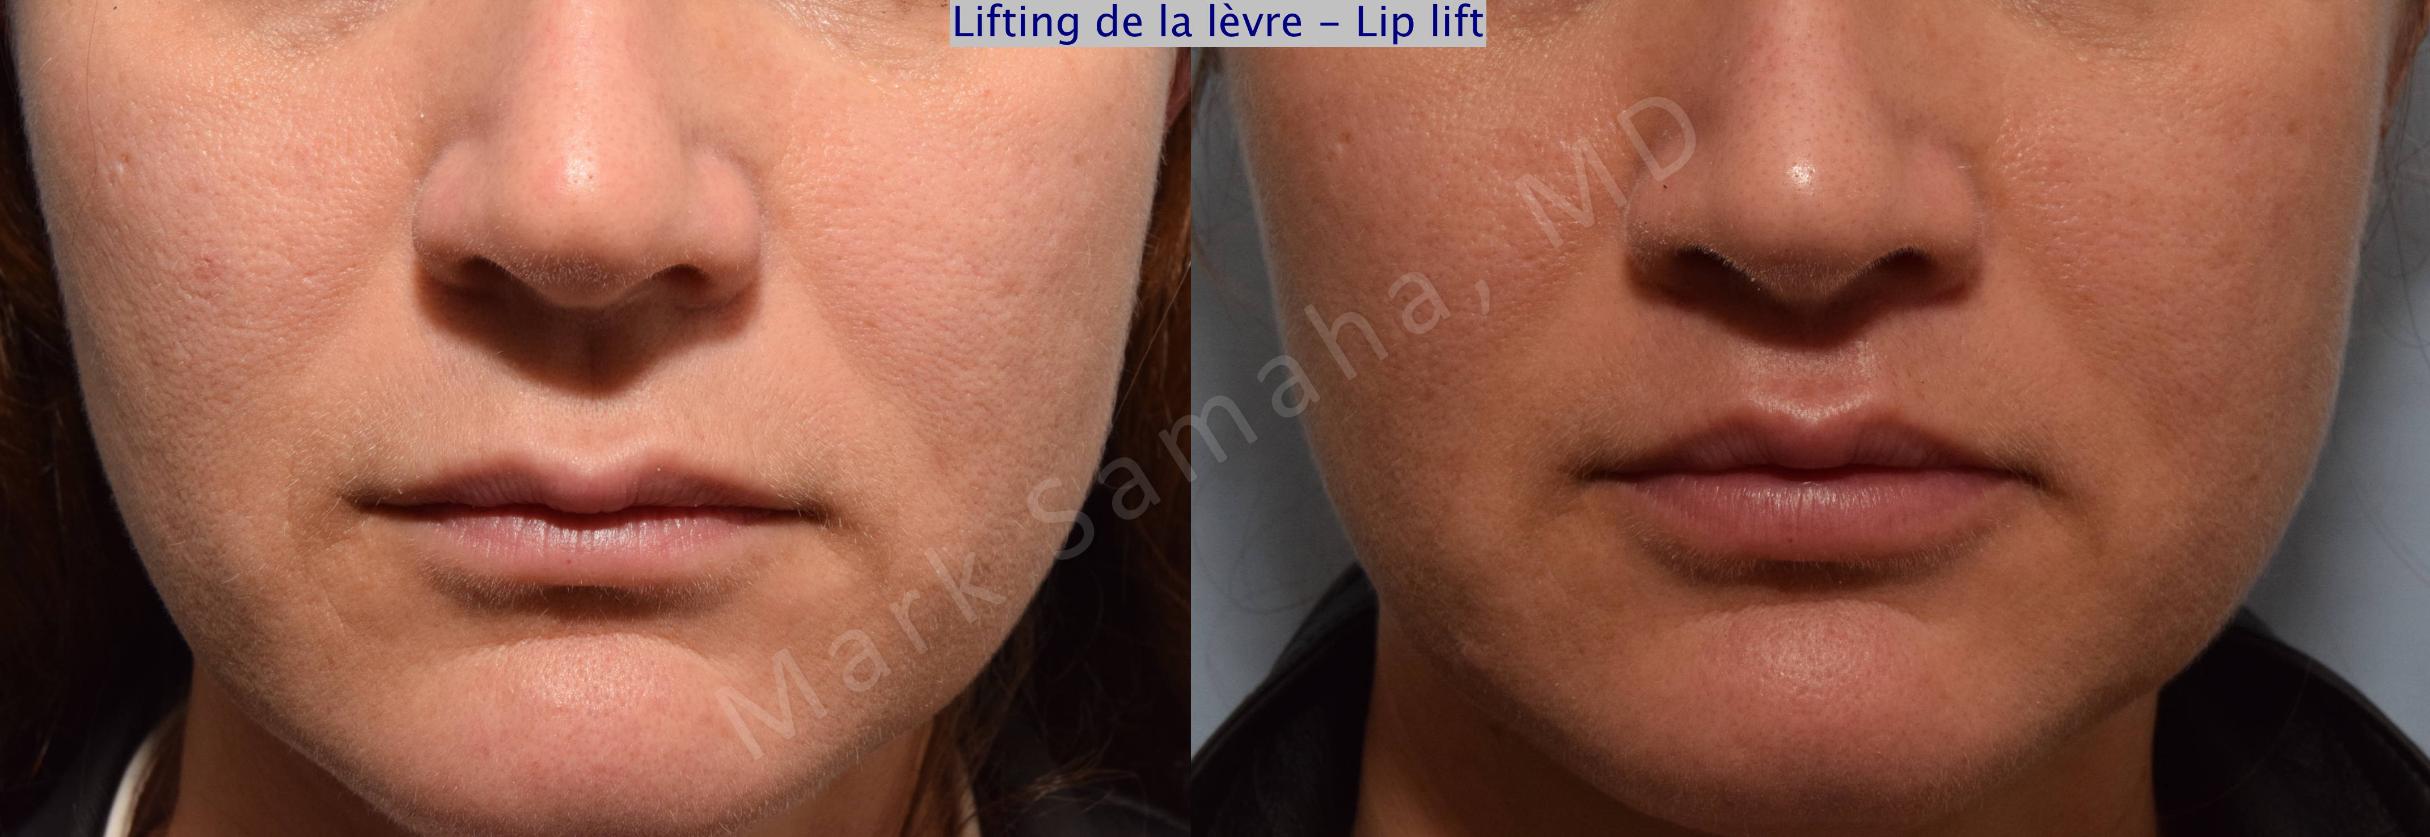 Before & After Lip Lift / Lifting de la lèvre supérieure Case 70 View #1 View in Mount Royal, QC